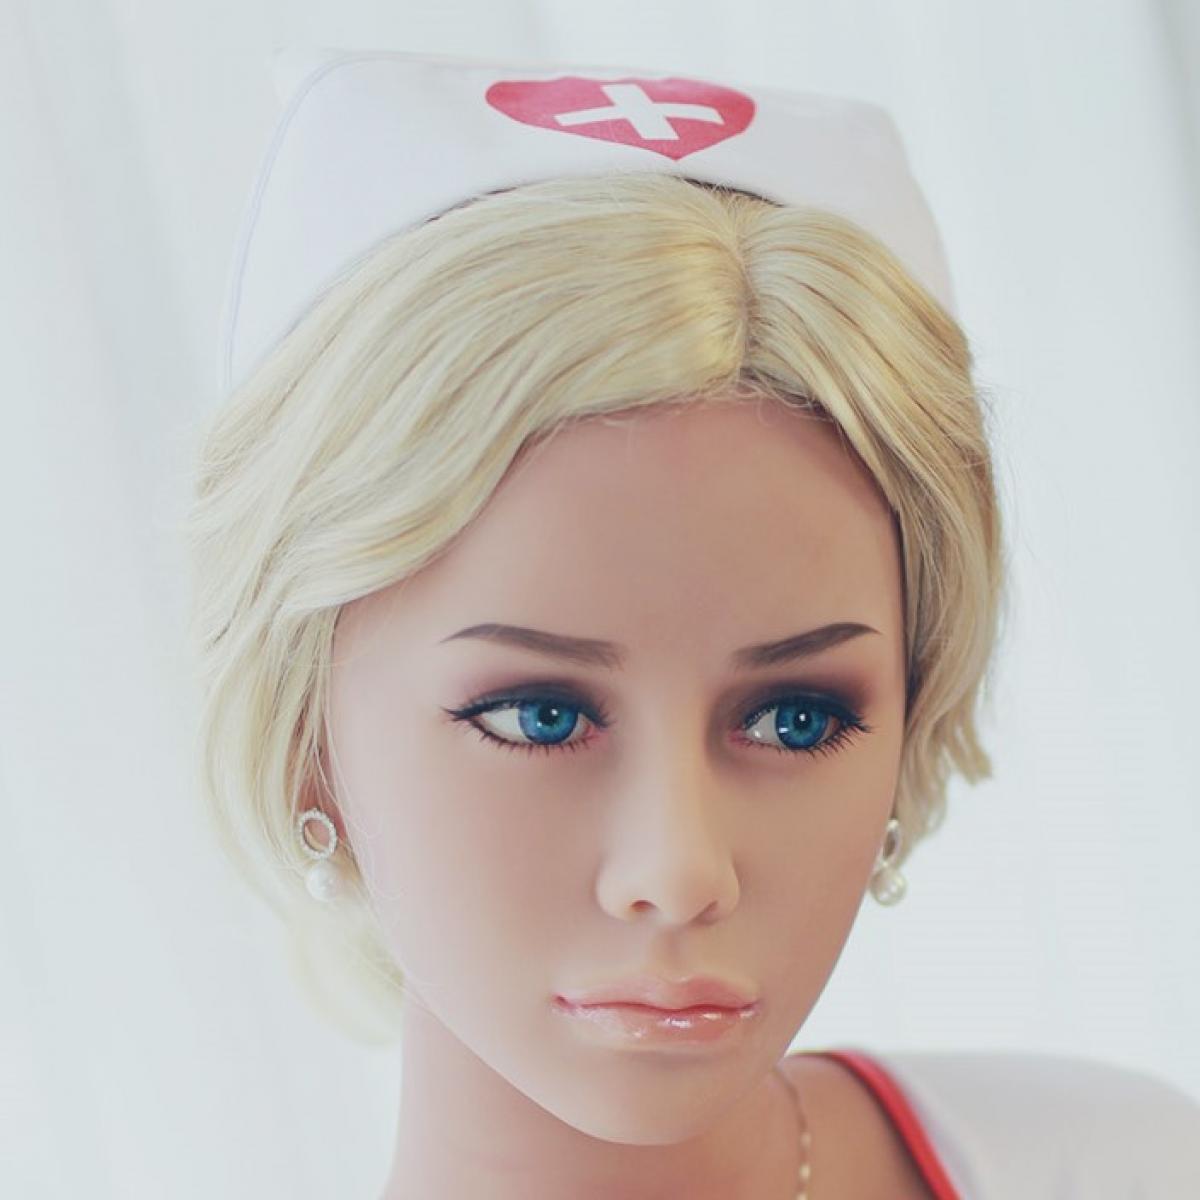 Neodoll Sugar babe - Kathryn Head - Sex Doll Head - M16 Compatible - Tan